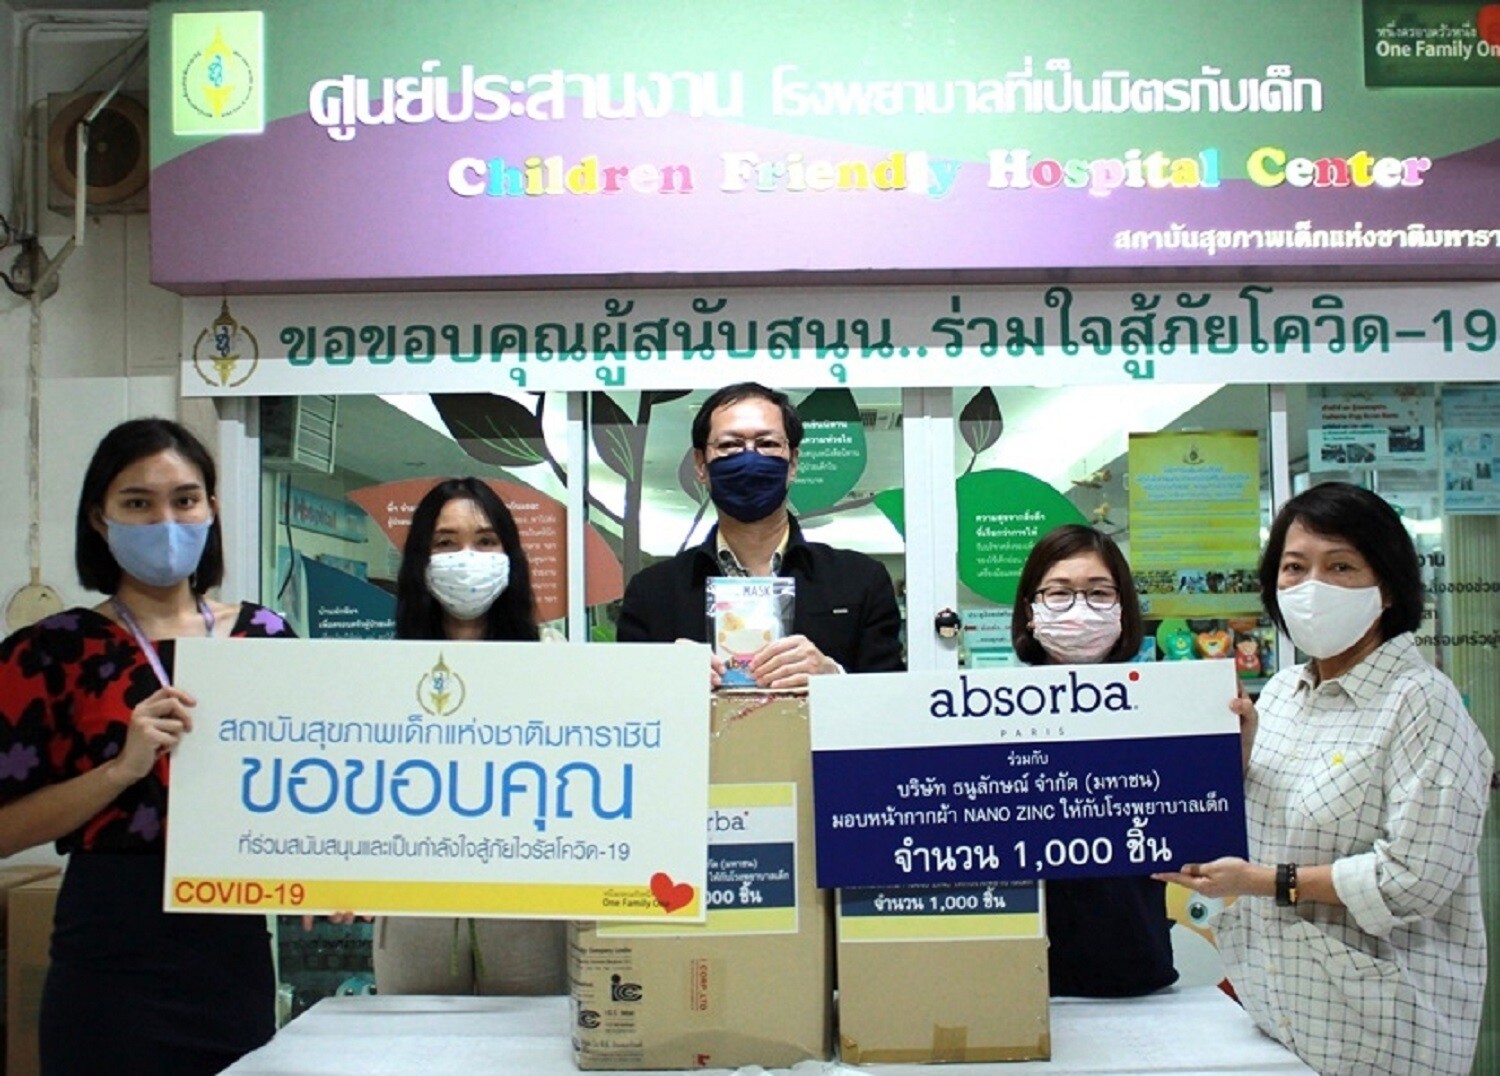 ภาพข่าว: Absorba มอบ “หน้ากากผ้านาโนซิงค์ออกไซด์” สำหรับเด็ก จำนวน 2,000 ชิ้น เพื่อช่วยป้องกันการแพร่ระบาดโรค COVID-19